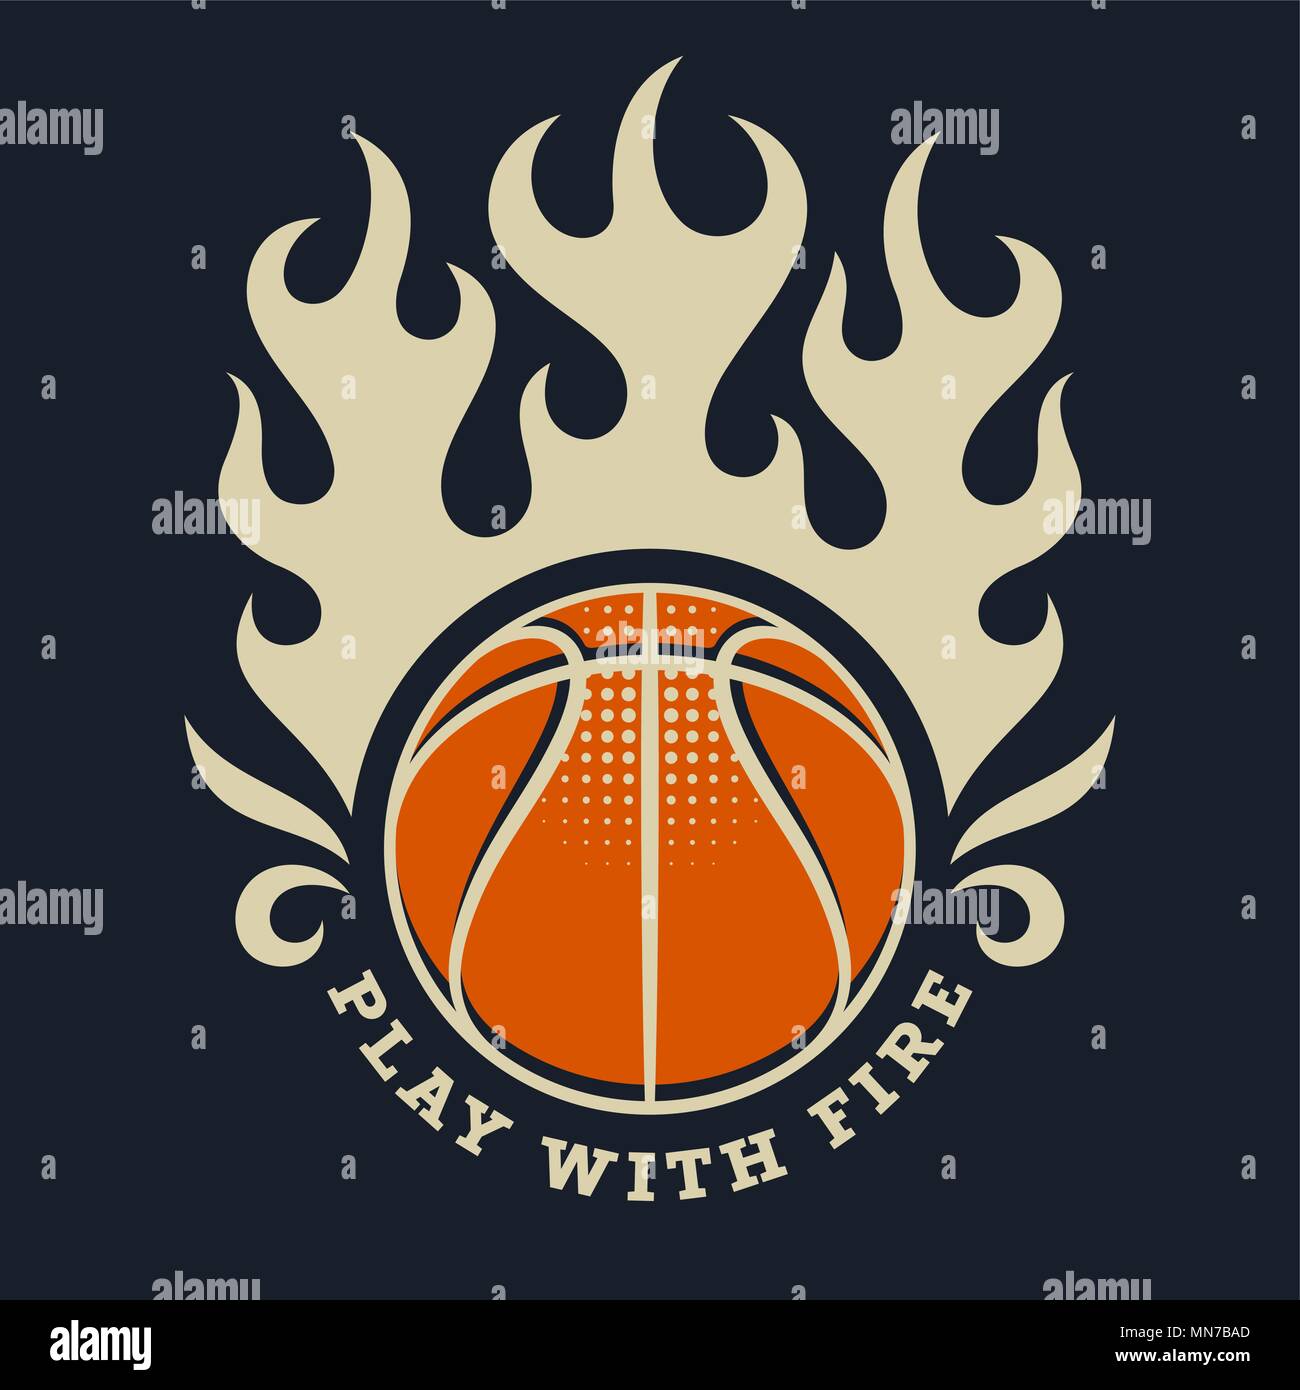 Athletic T-shirt Vintage graphiques / Illustration / Sport Graphic Tee Original / devis / motivation sportive de l'équipe de basket-ball lent / Jouer avec le feu Illustration de Vecteur